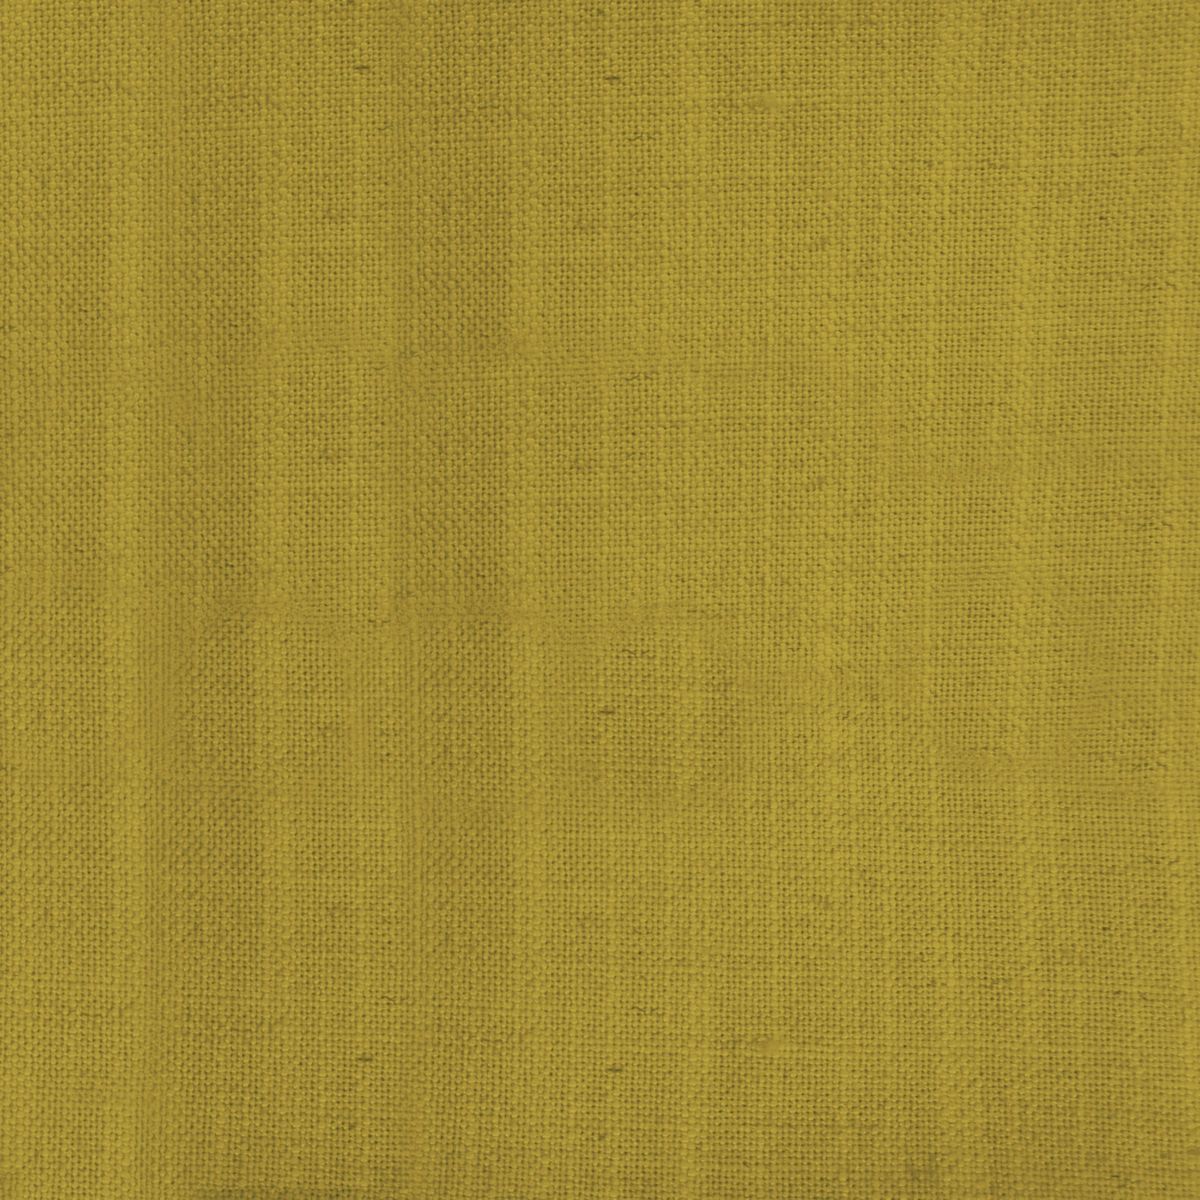 Tivoli Mustard Fabric by Voyage Maison